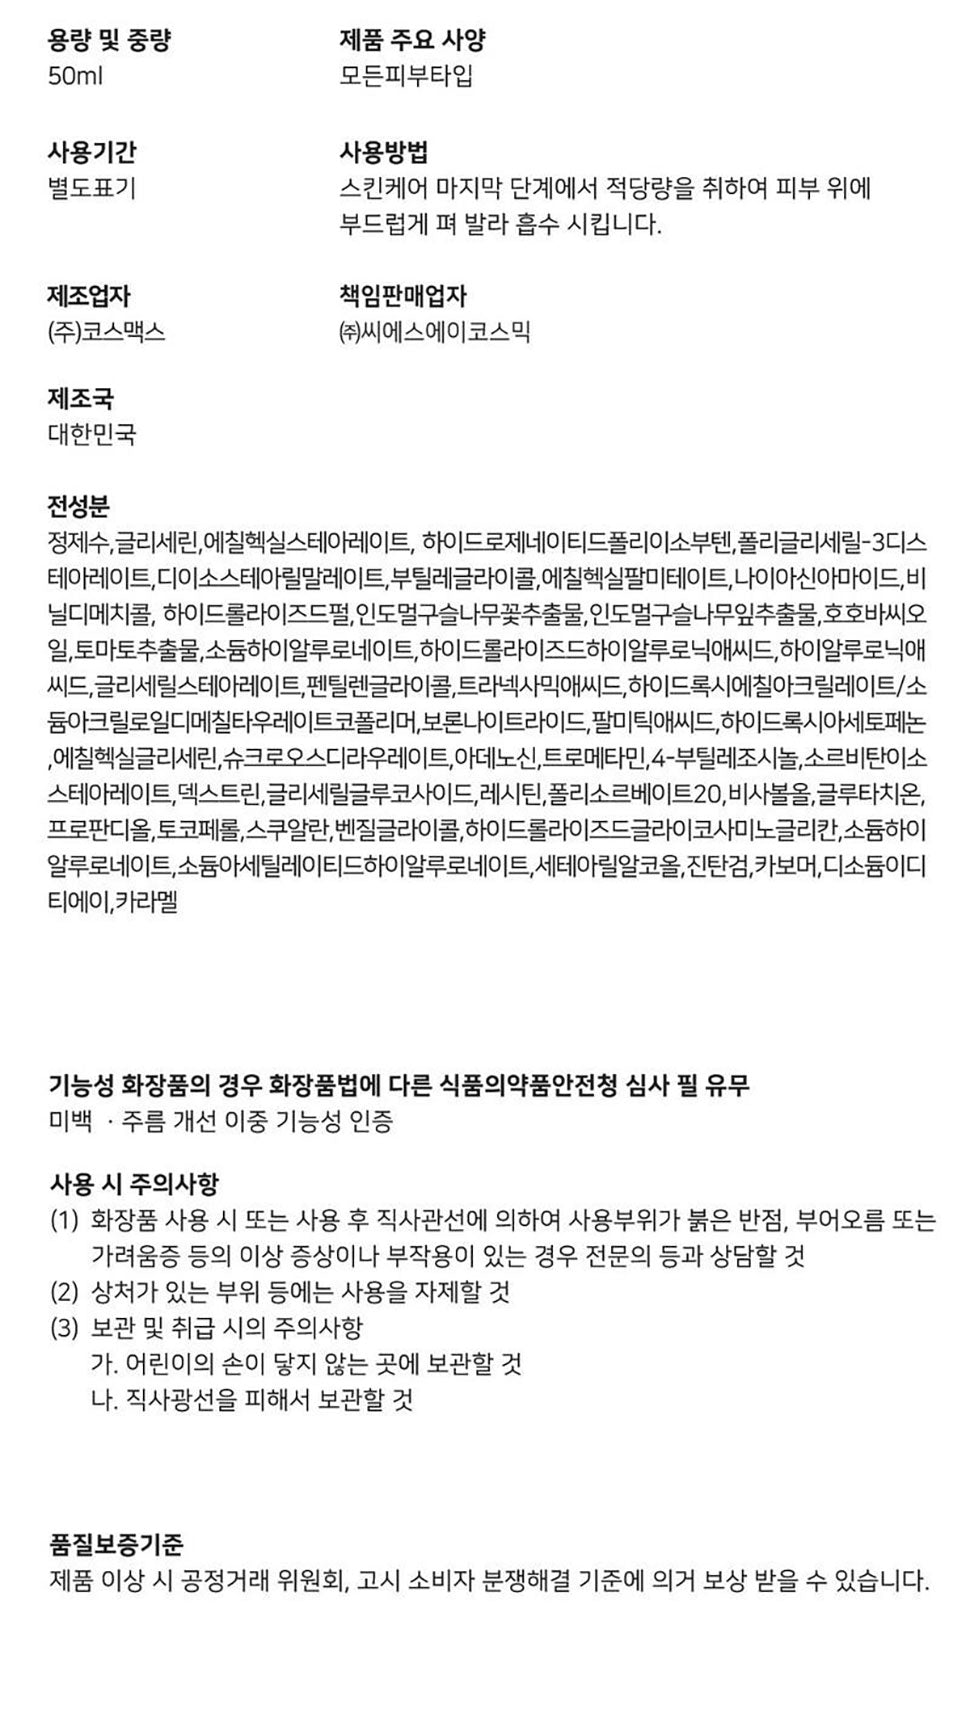 조성아 기미 크림 재생 크림 선크림 홈쇼핑 한국대박 공구중독